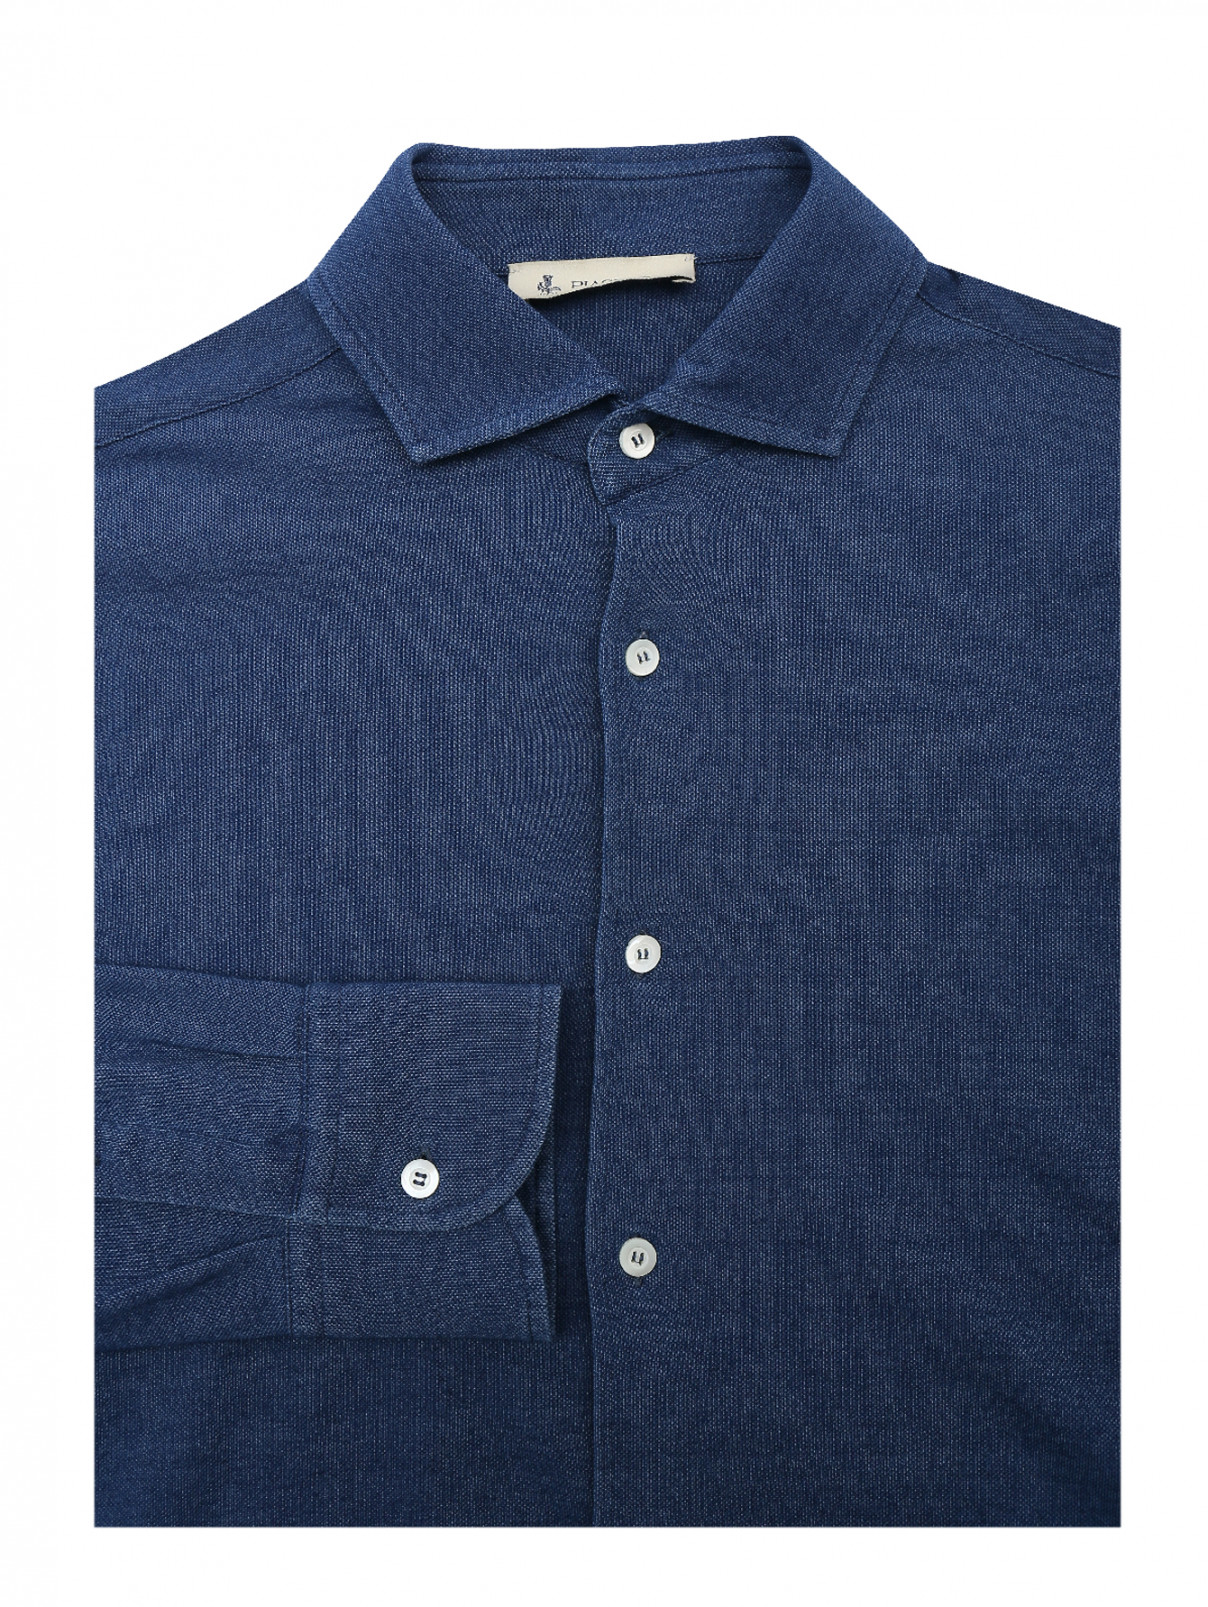 Рубашка трикотажная из хлопка Piacenza Cashmere  –  Общий вид  – Цвет:  Синий